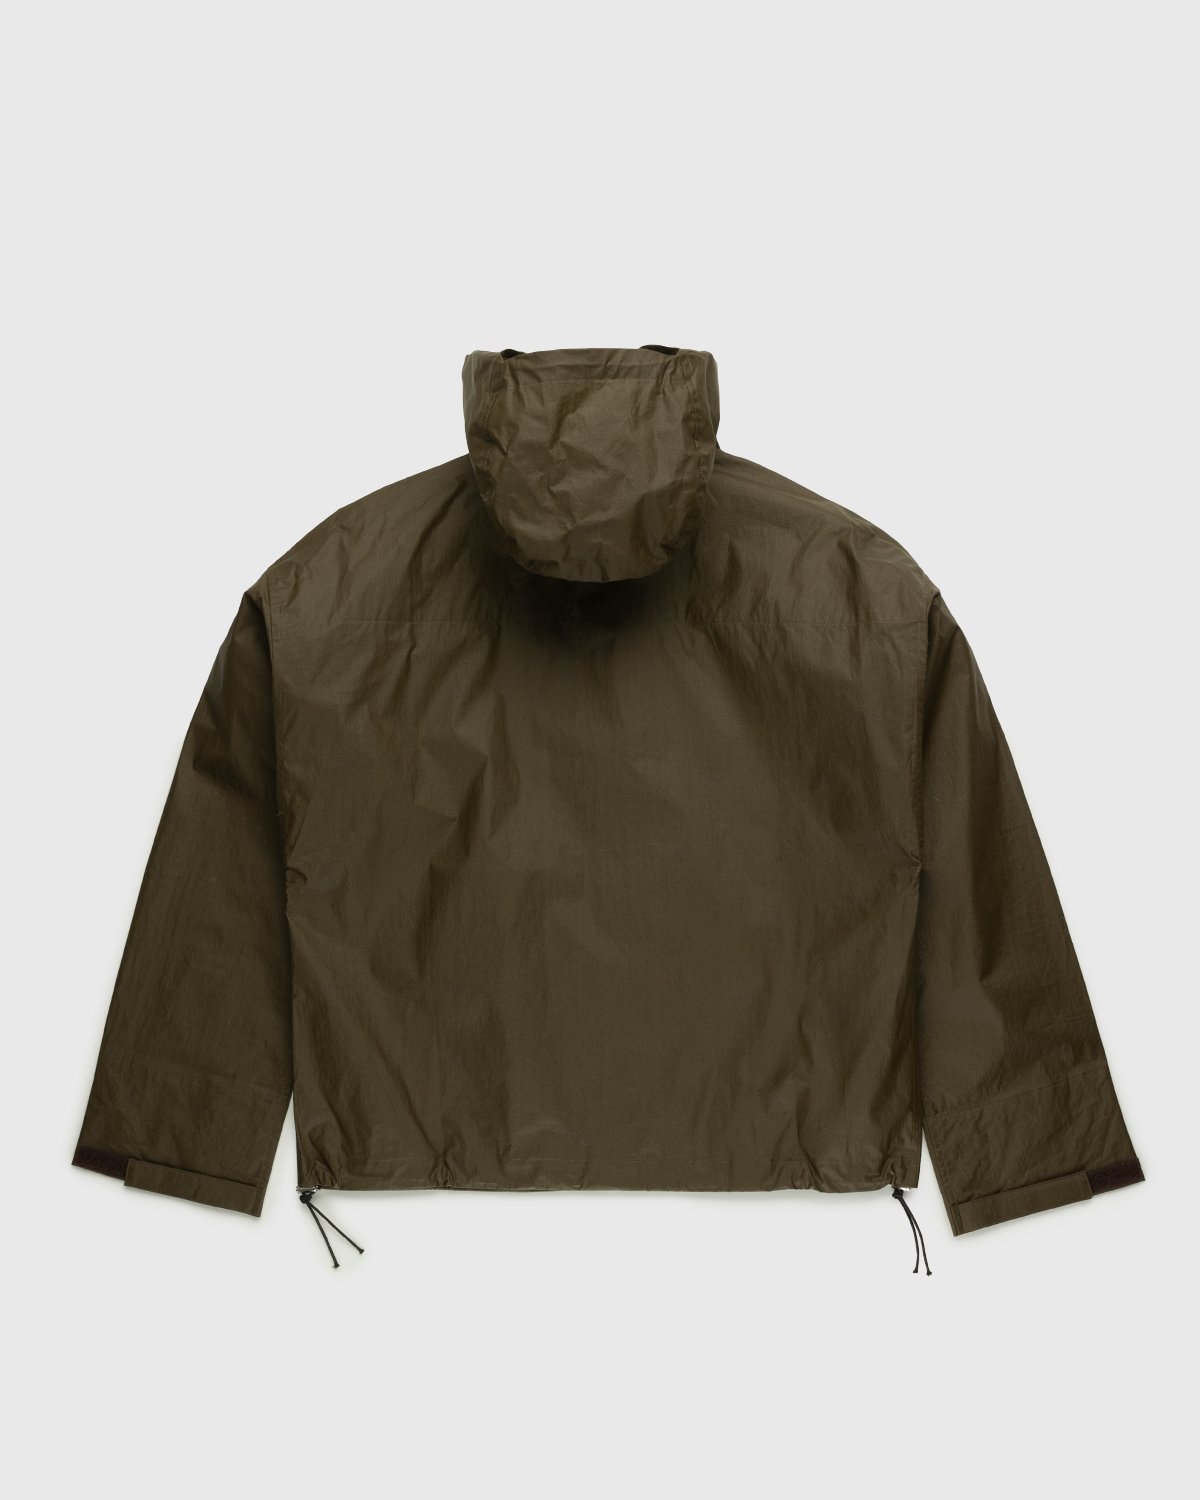 Arnar Mar Jonsson - Skel Hooded Jacket Beige/Chocolate - Clothing - Brown - Image 2